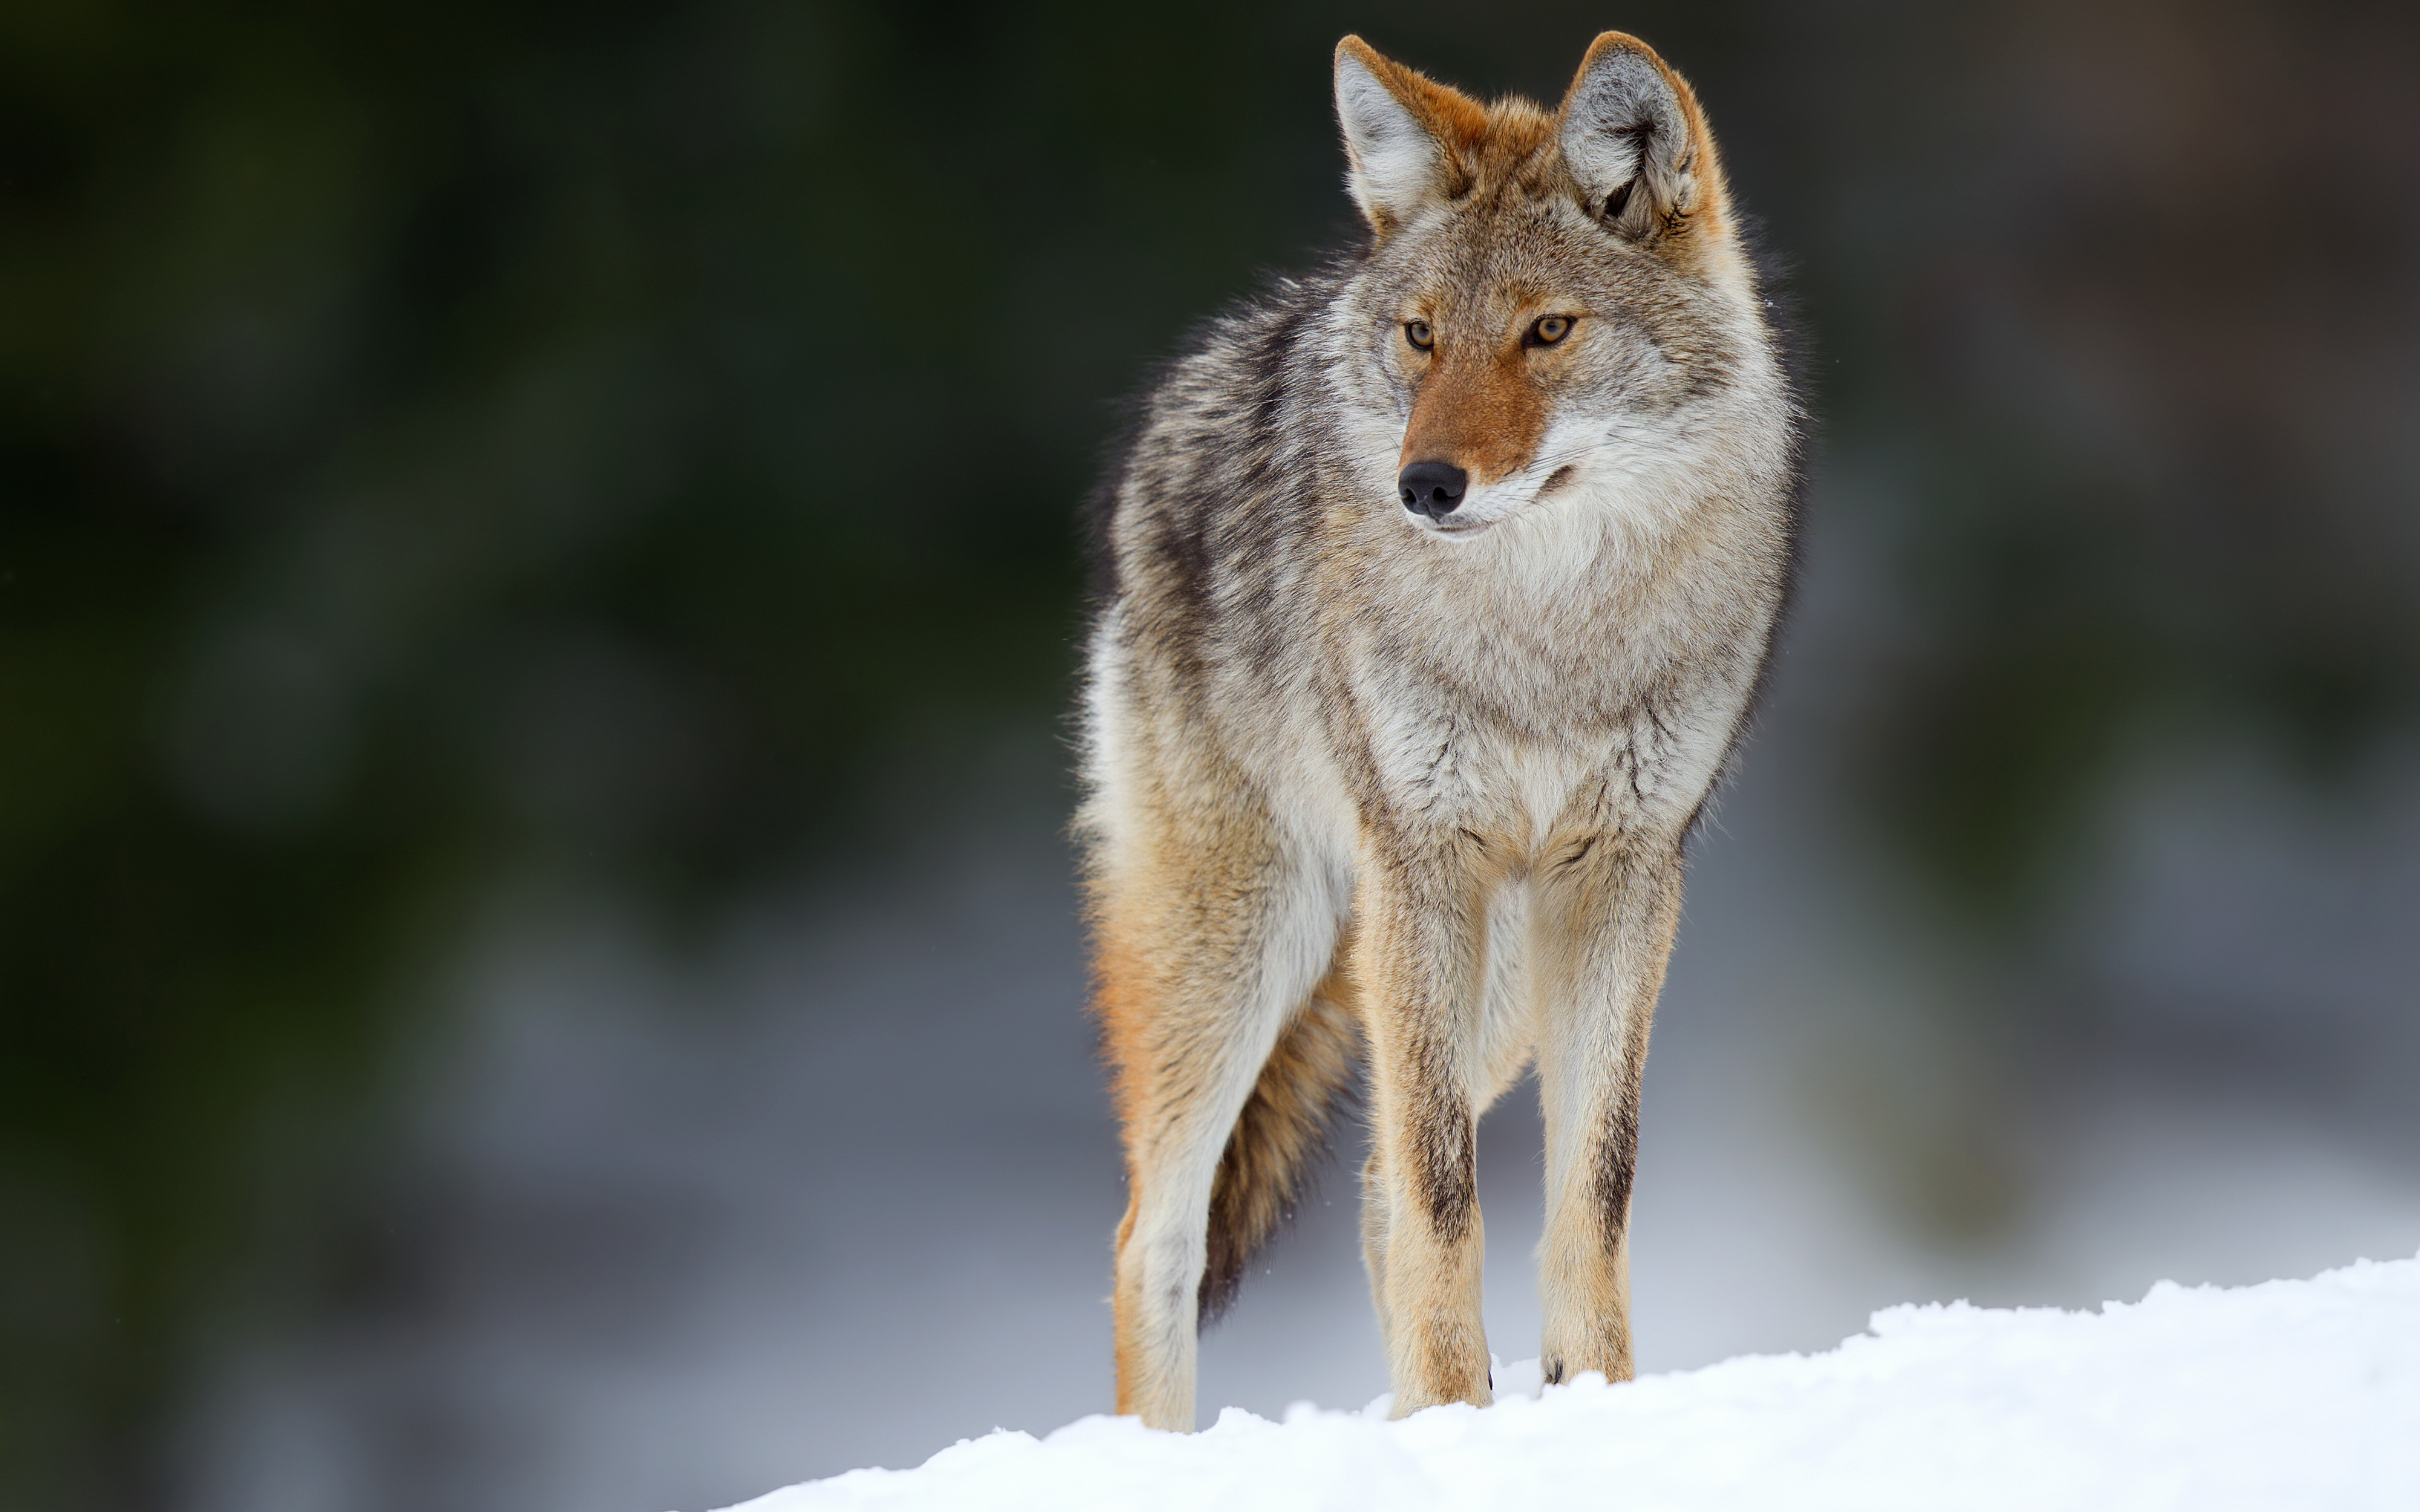 코요테 벽지,야생 동물,코요테,늑대,큰 개자리 루푸스 툰드라 룸,붉은 늑대